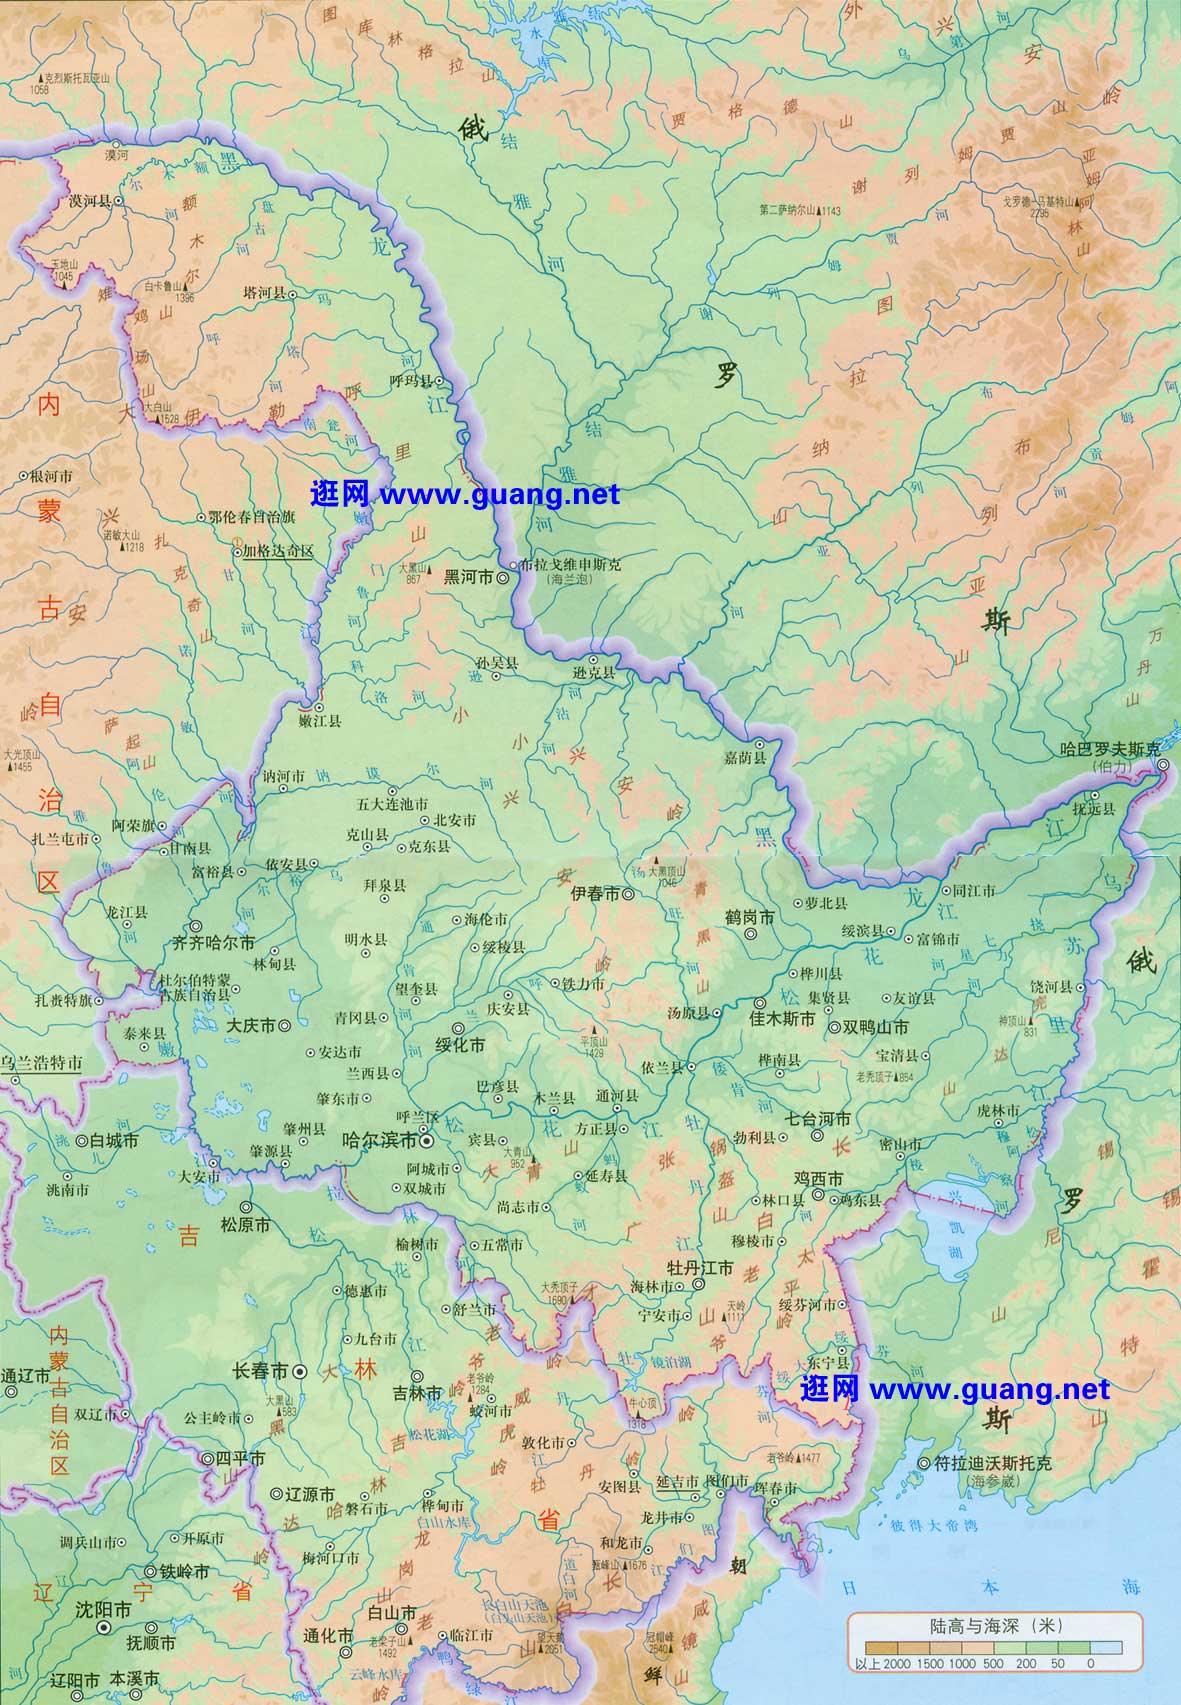 2021最新黑龙江地图二查询,黑龙江地图二高清版下载,黑龙江地图二中文